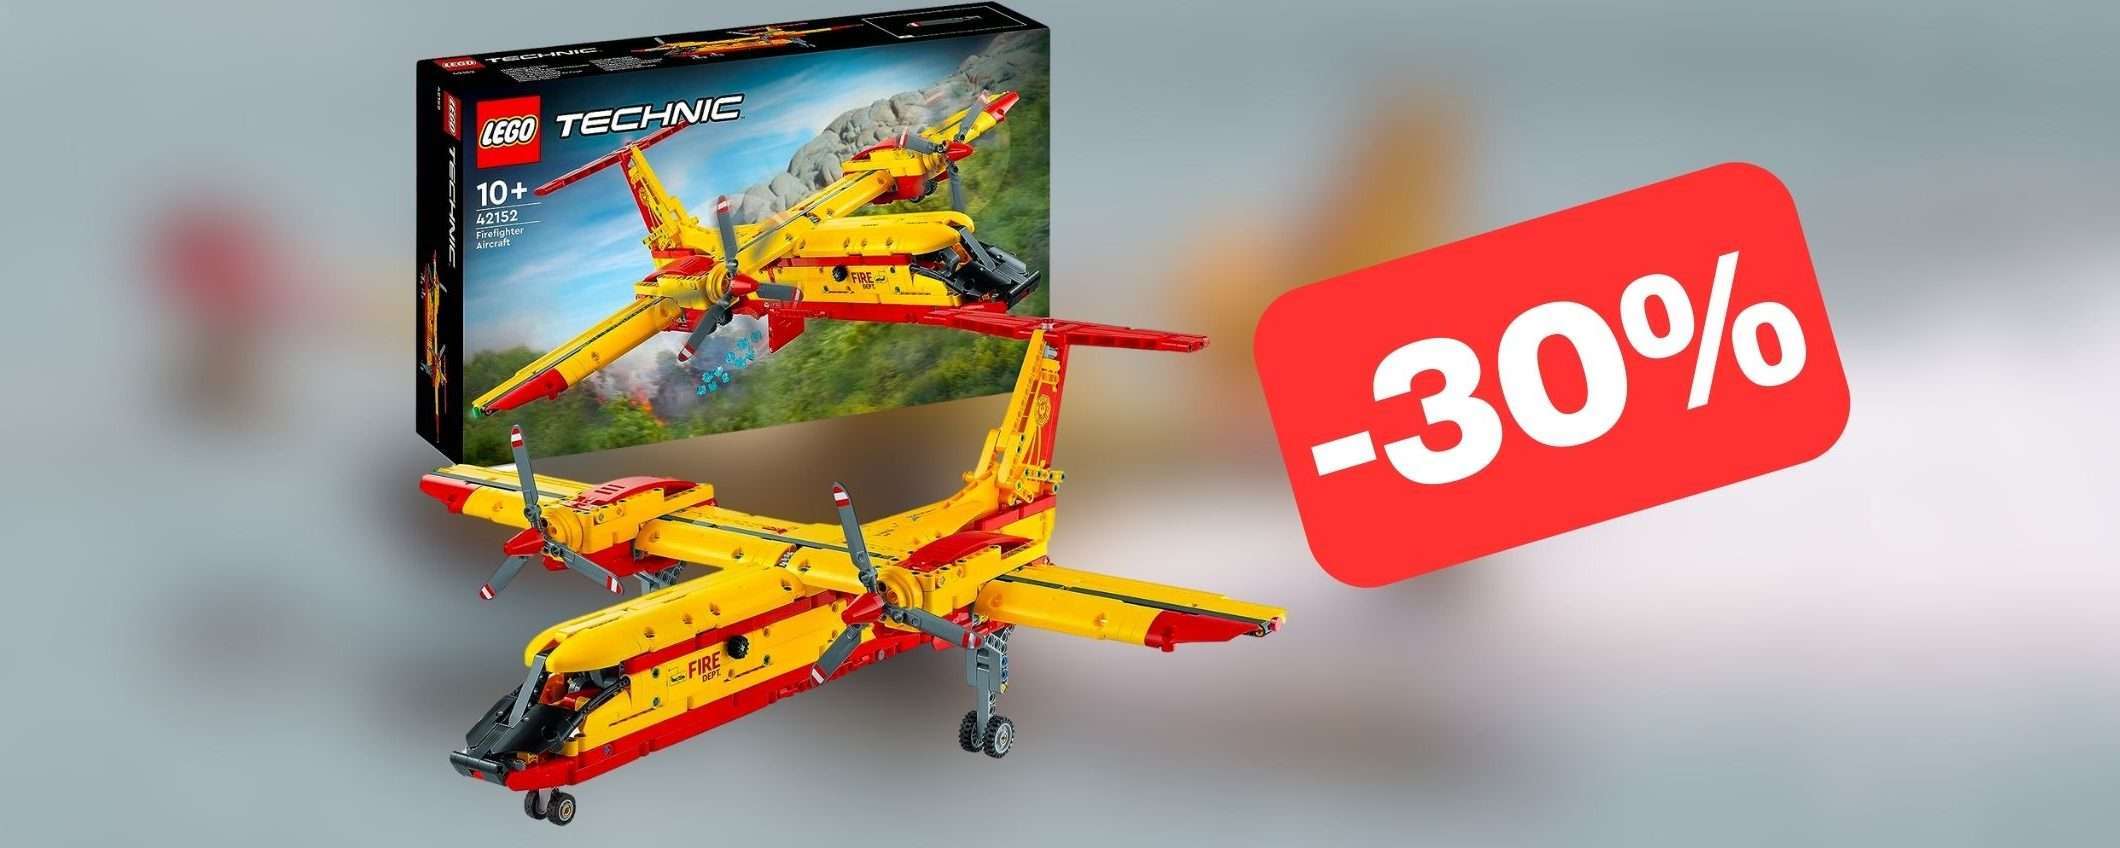 Aeroplano antincendio giocattolo LEGO in MEGA SCONTO su Amazon (-30%)